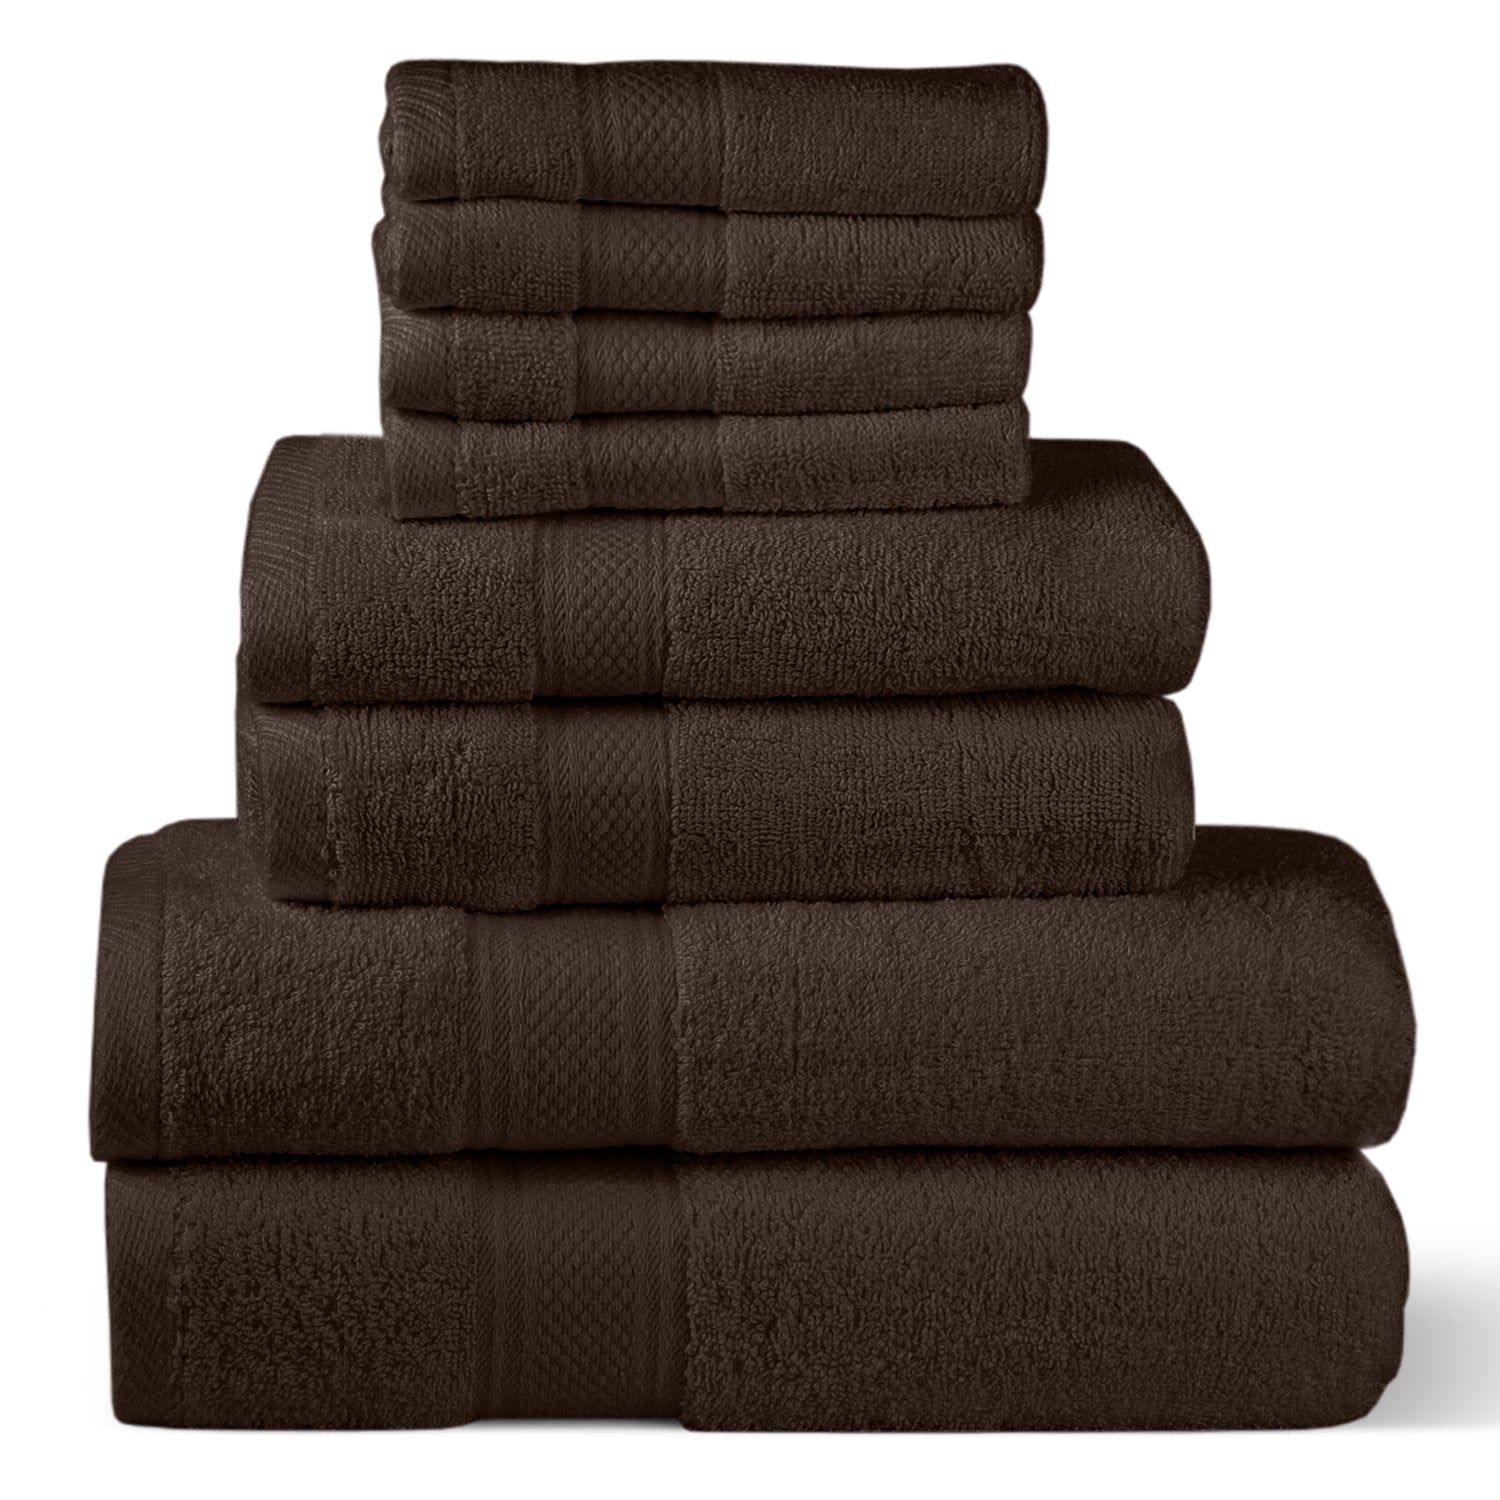 Brown Towel Set (Pack of 8)